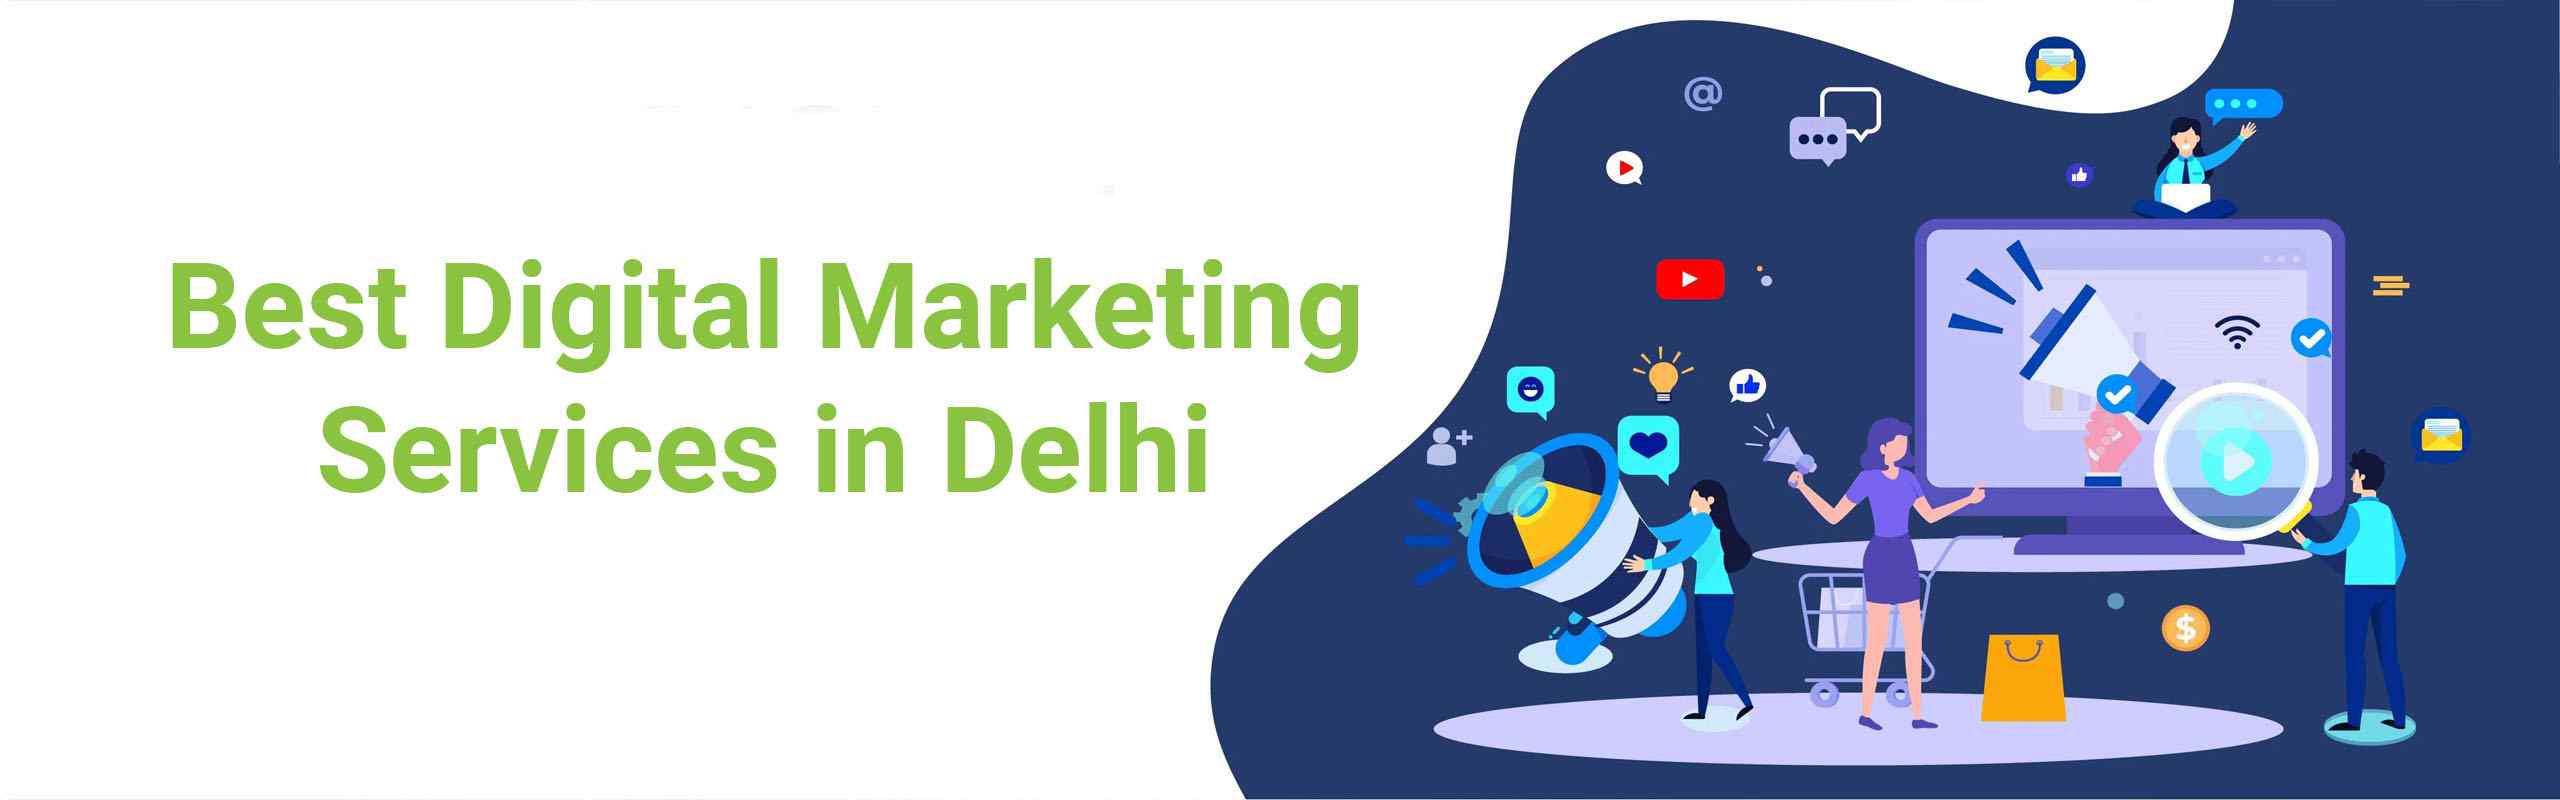 best digital marketing services in delhi